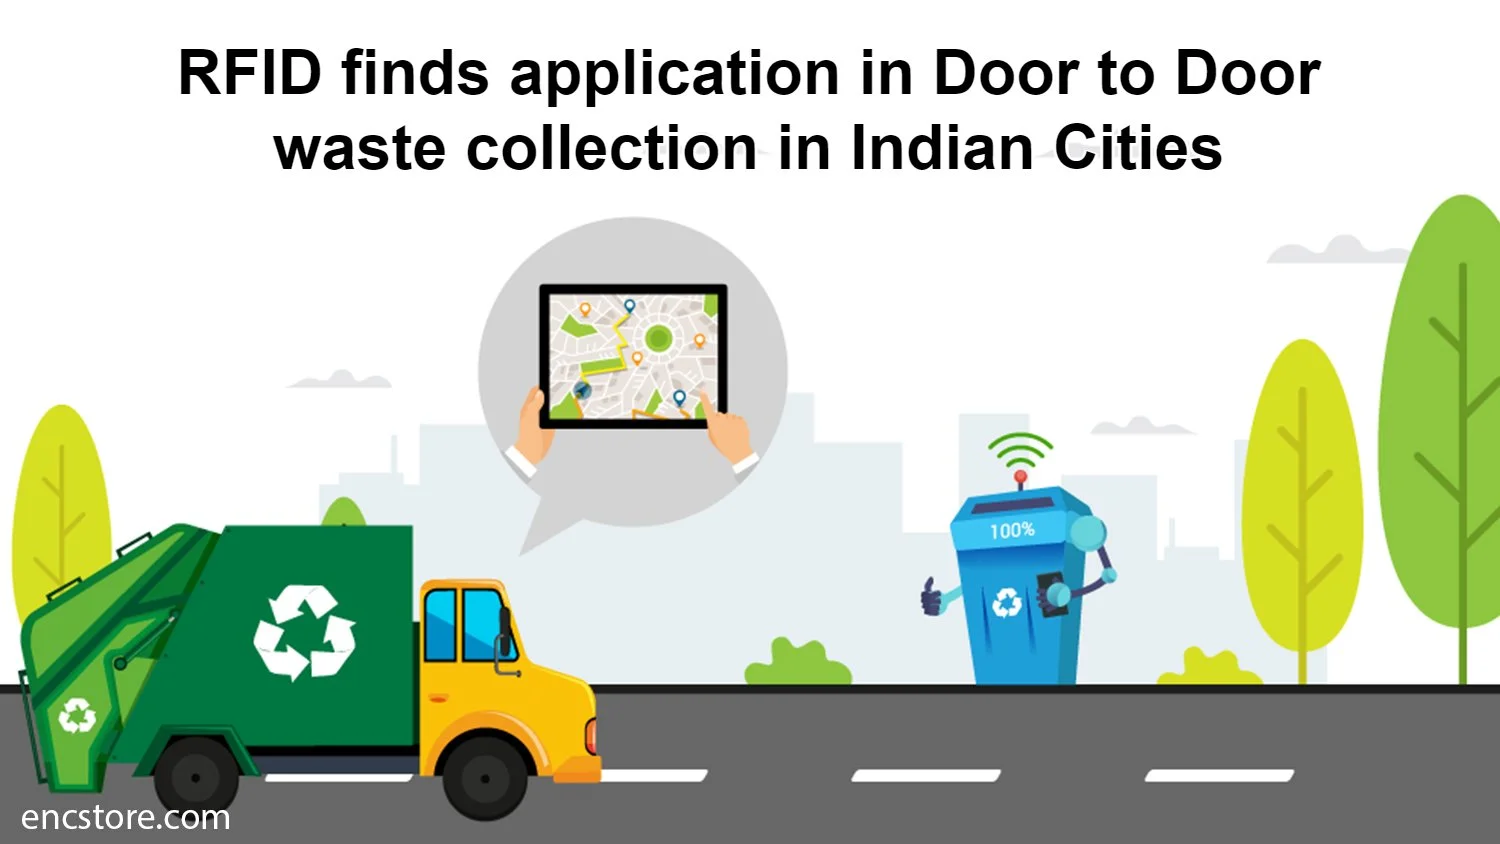 RFID finds application in Door to Door waste collection in Indian Cities